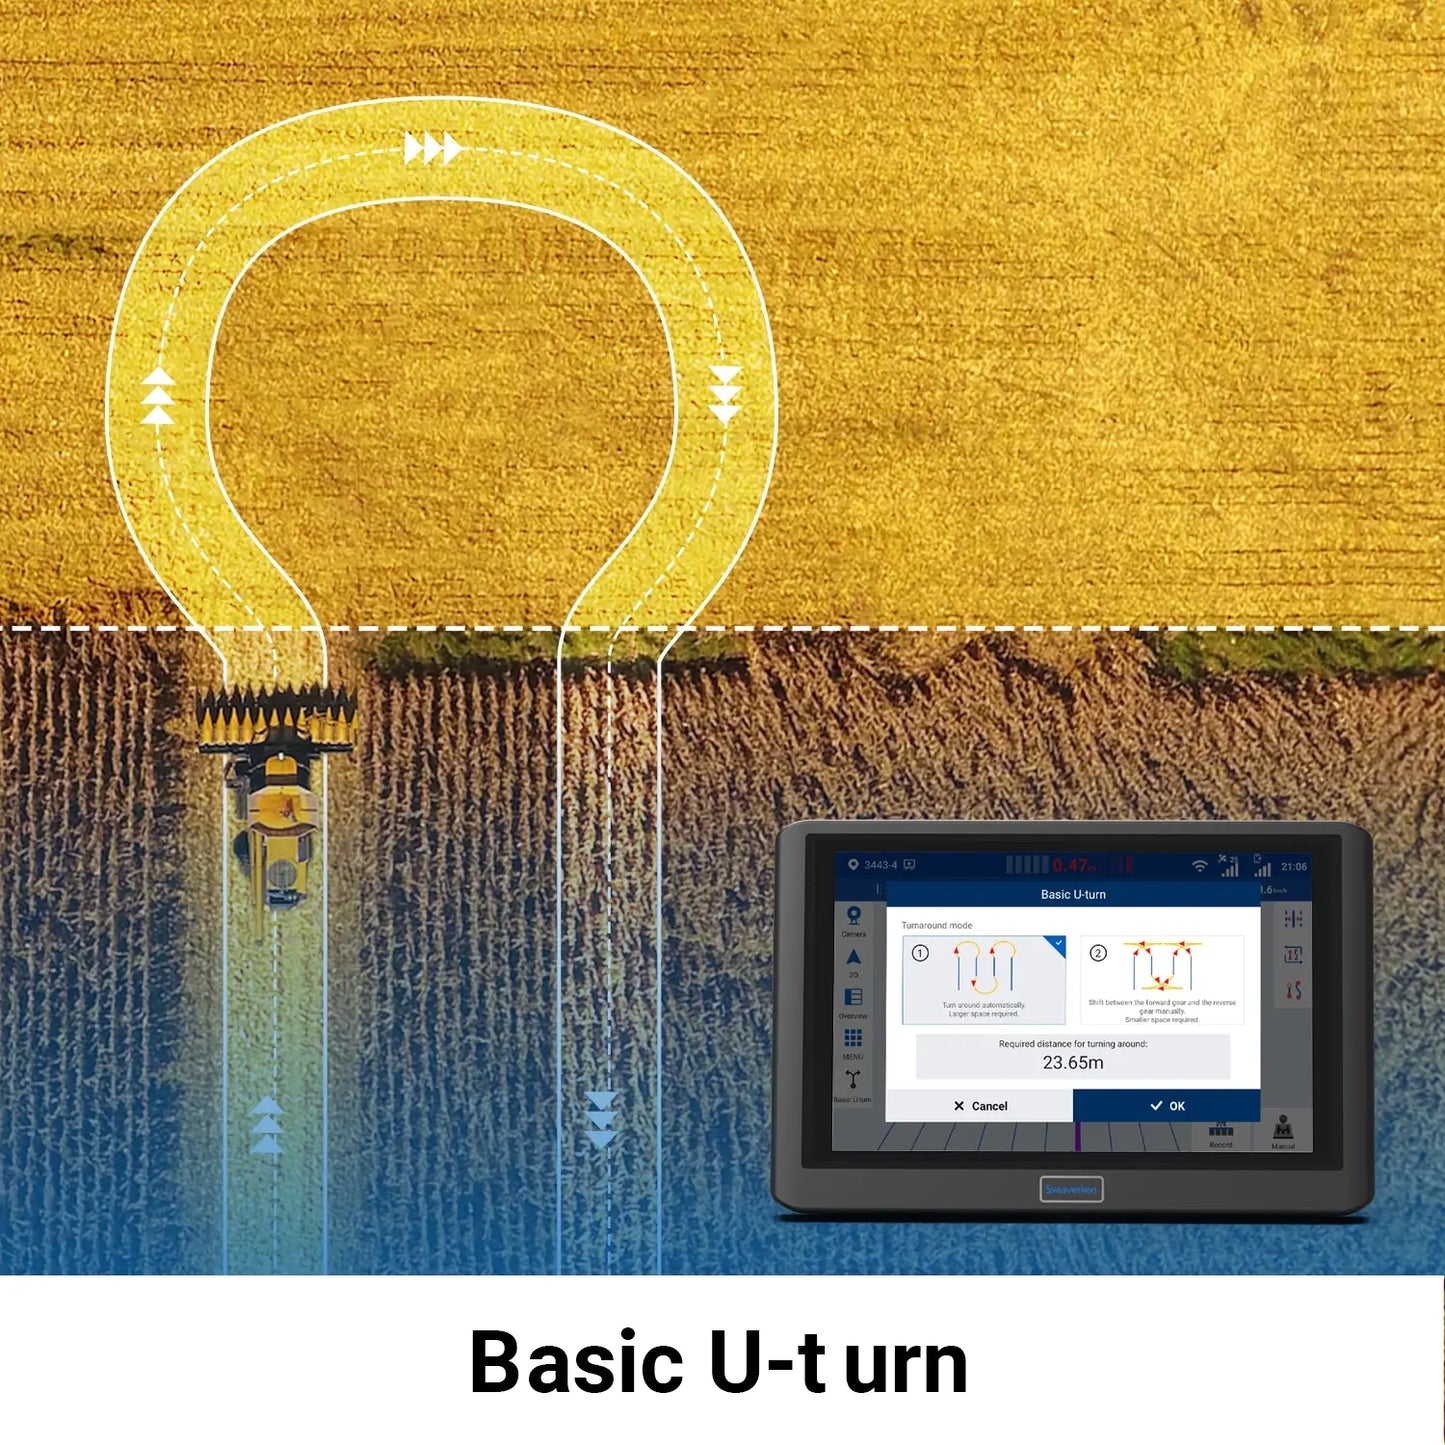 F100 Basic U-turn (Activation Code)